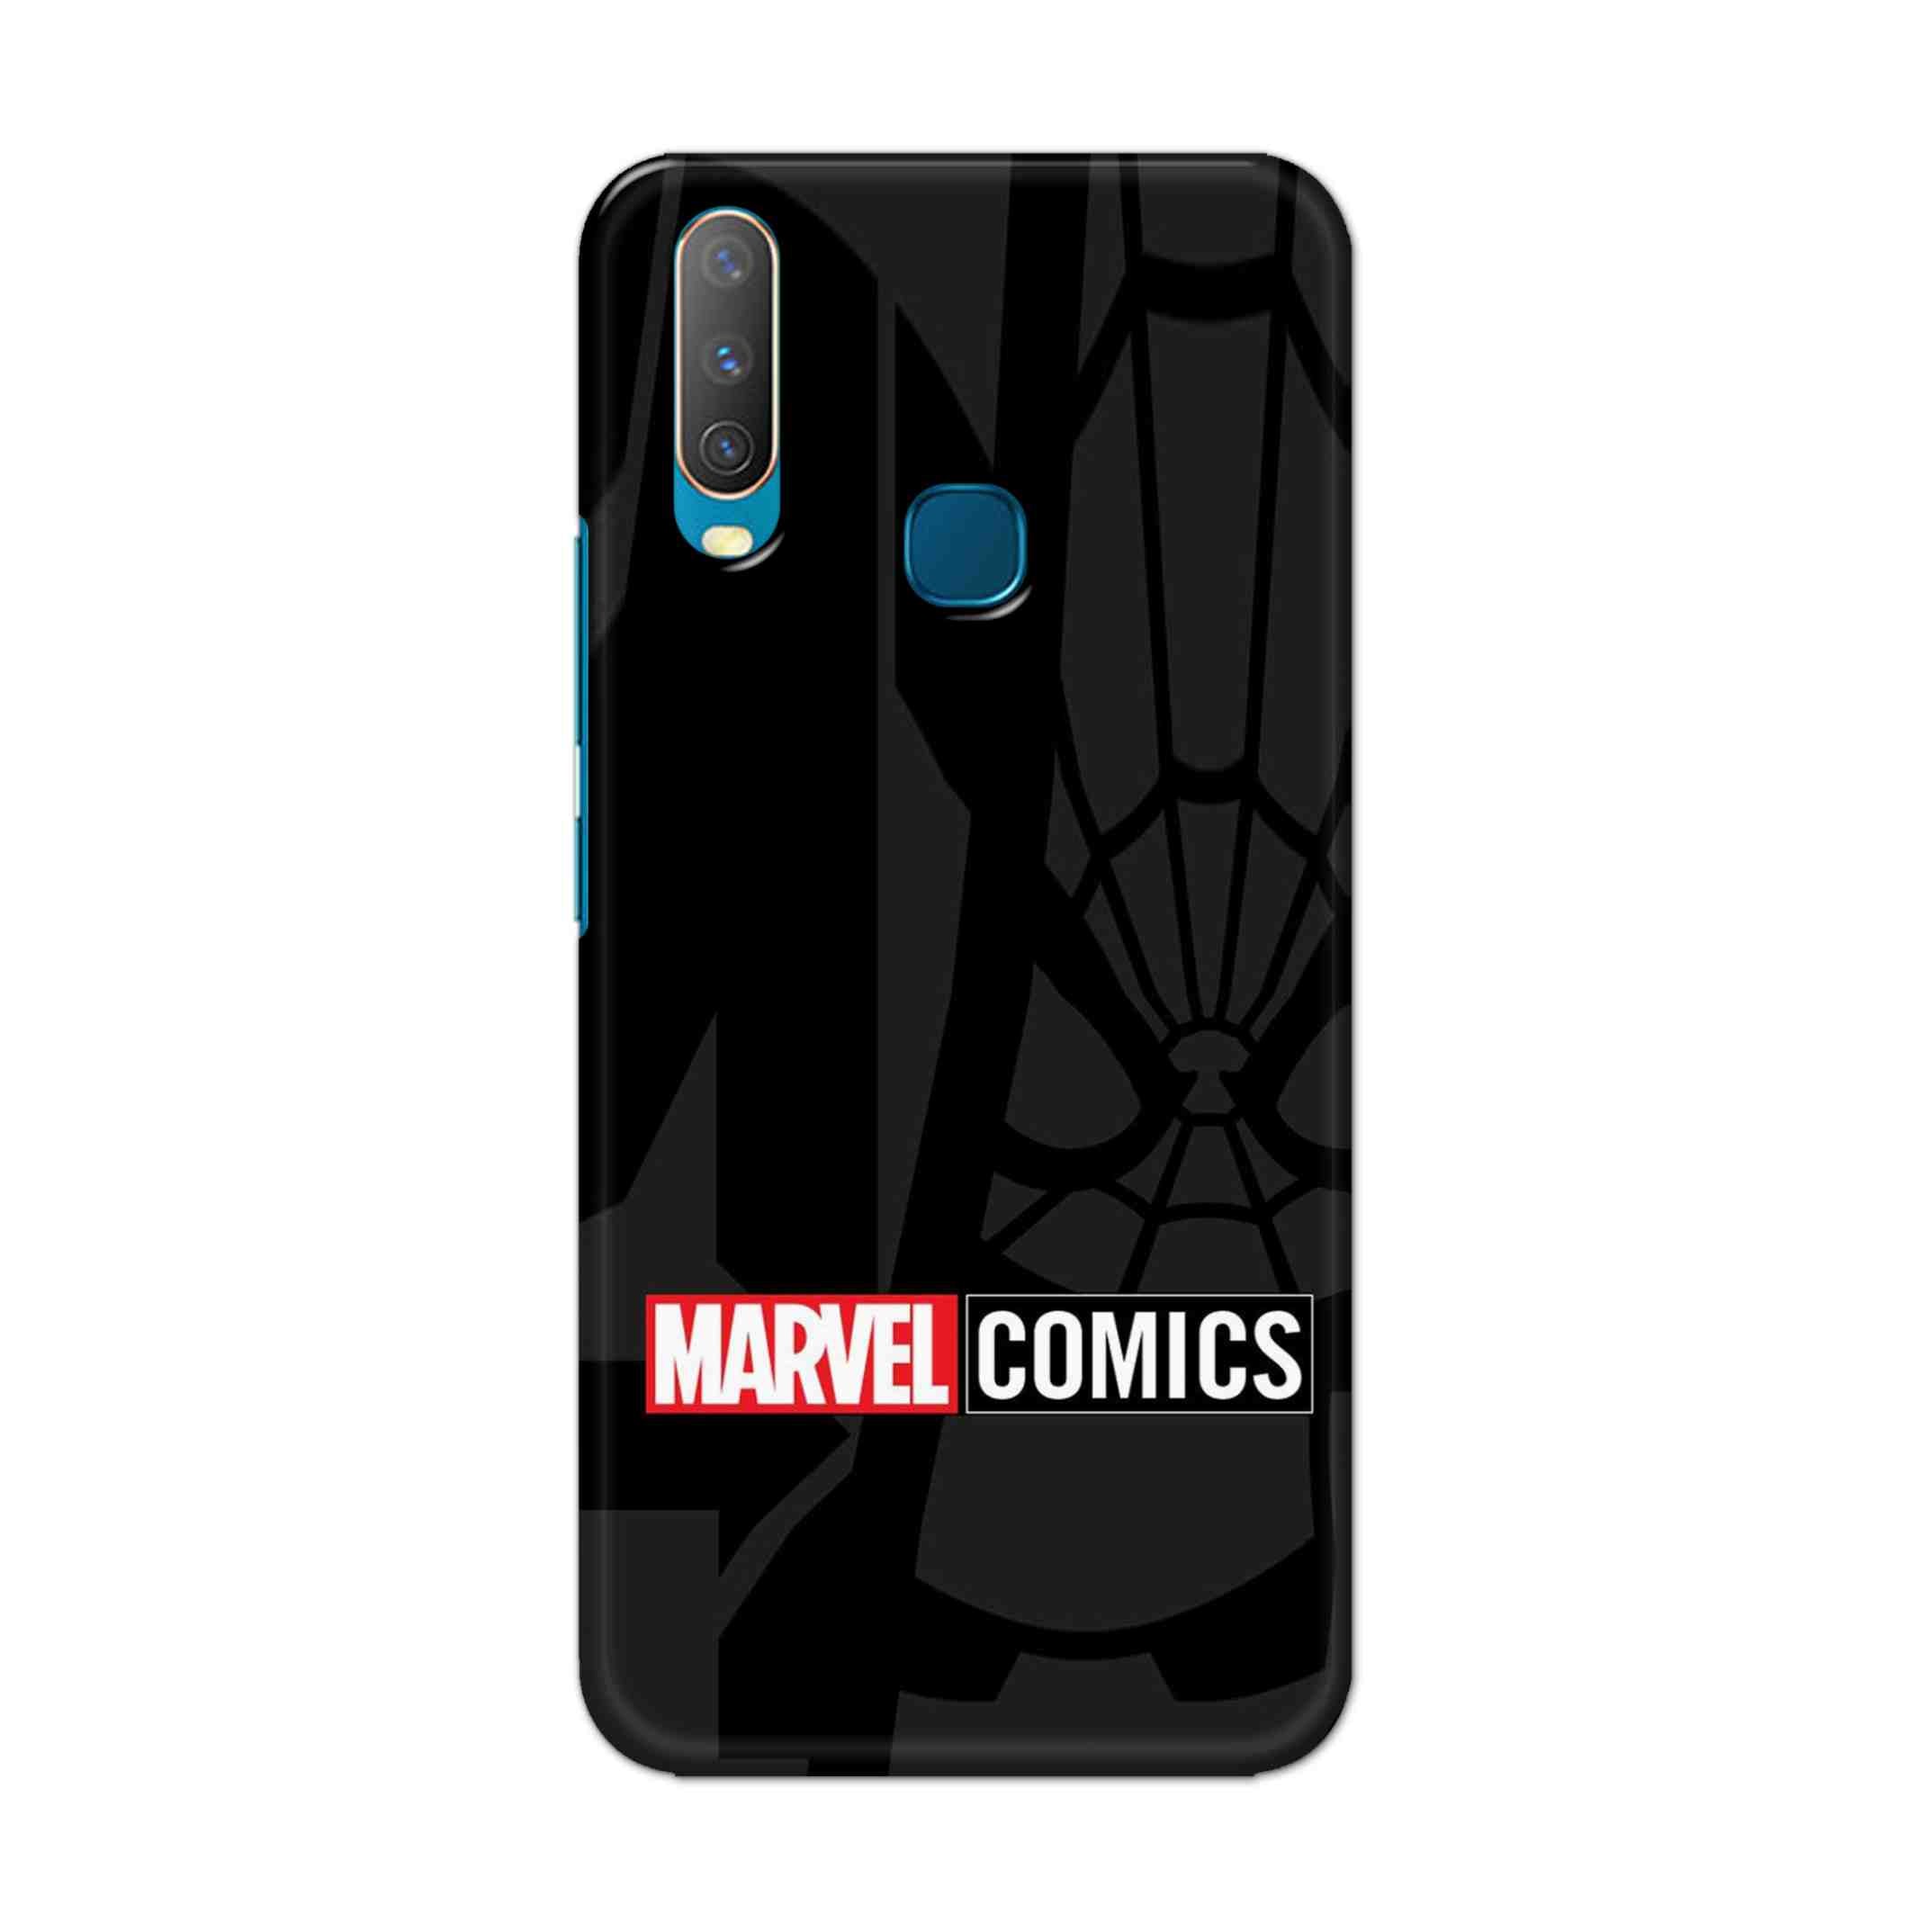 Buy Marvel Comics Hard Back Mobile Phone Case Cover For Vivo Y17 / U10 Online